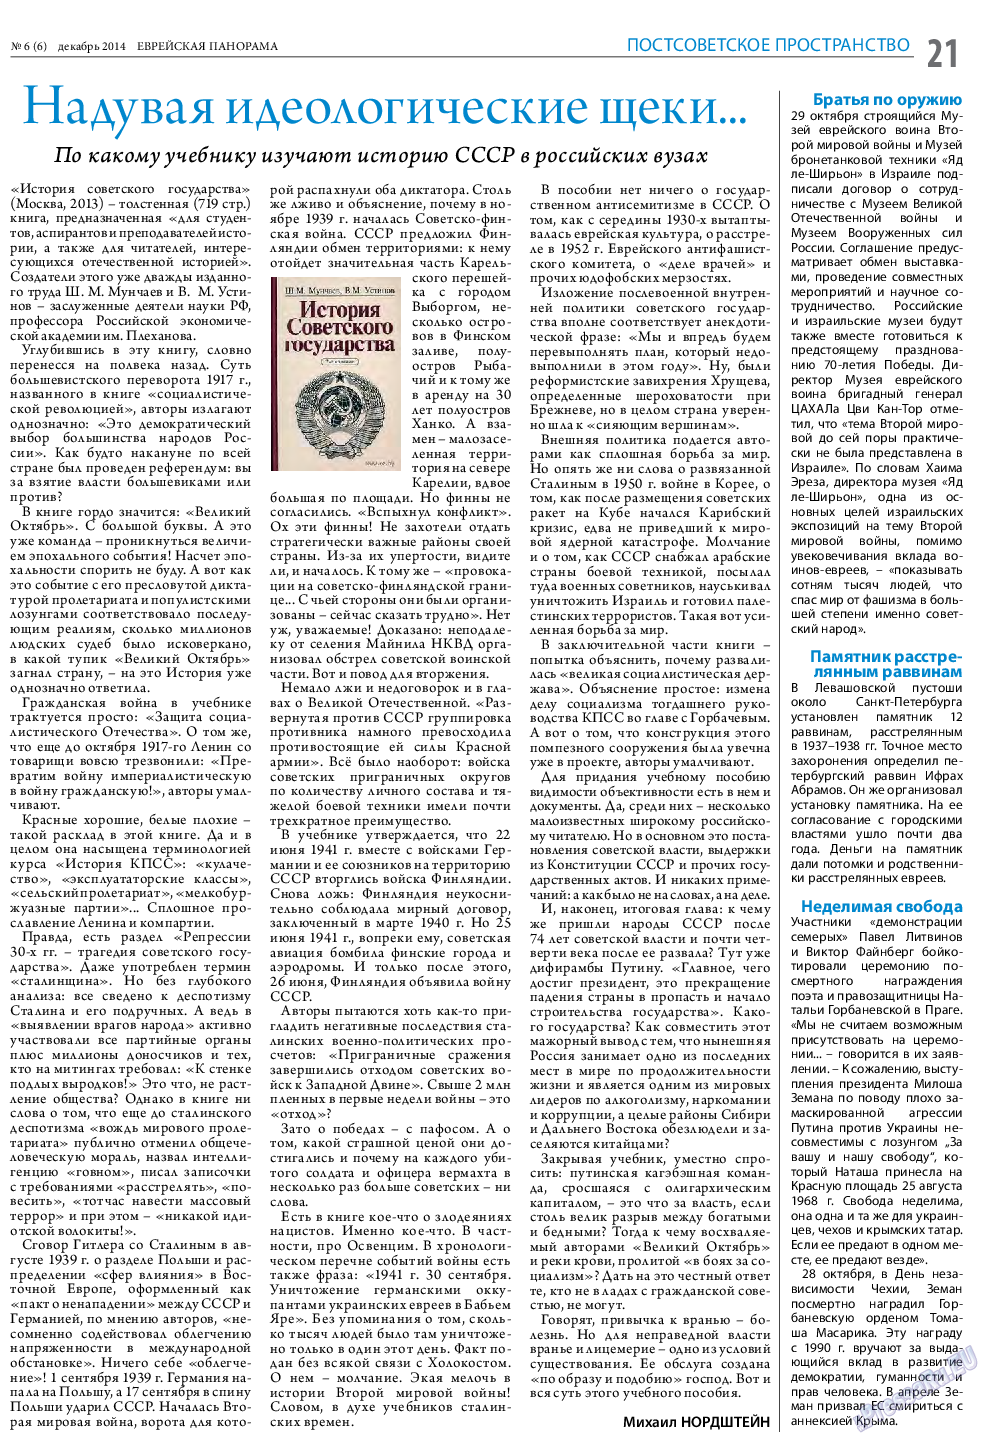 Еврейская панорама (газета). 2014 год, номер 6, стр. 21